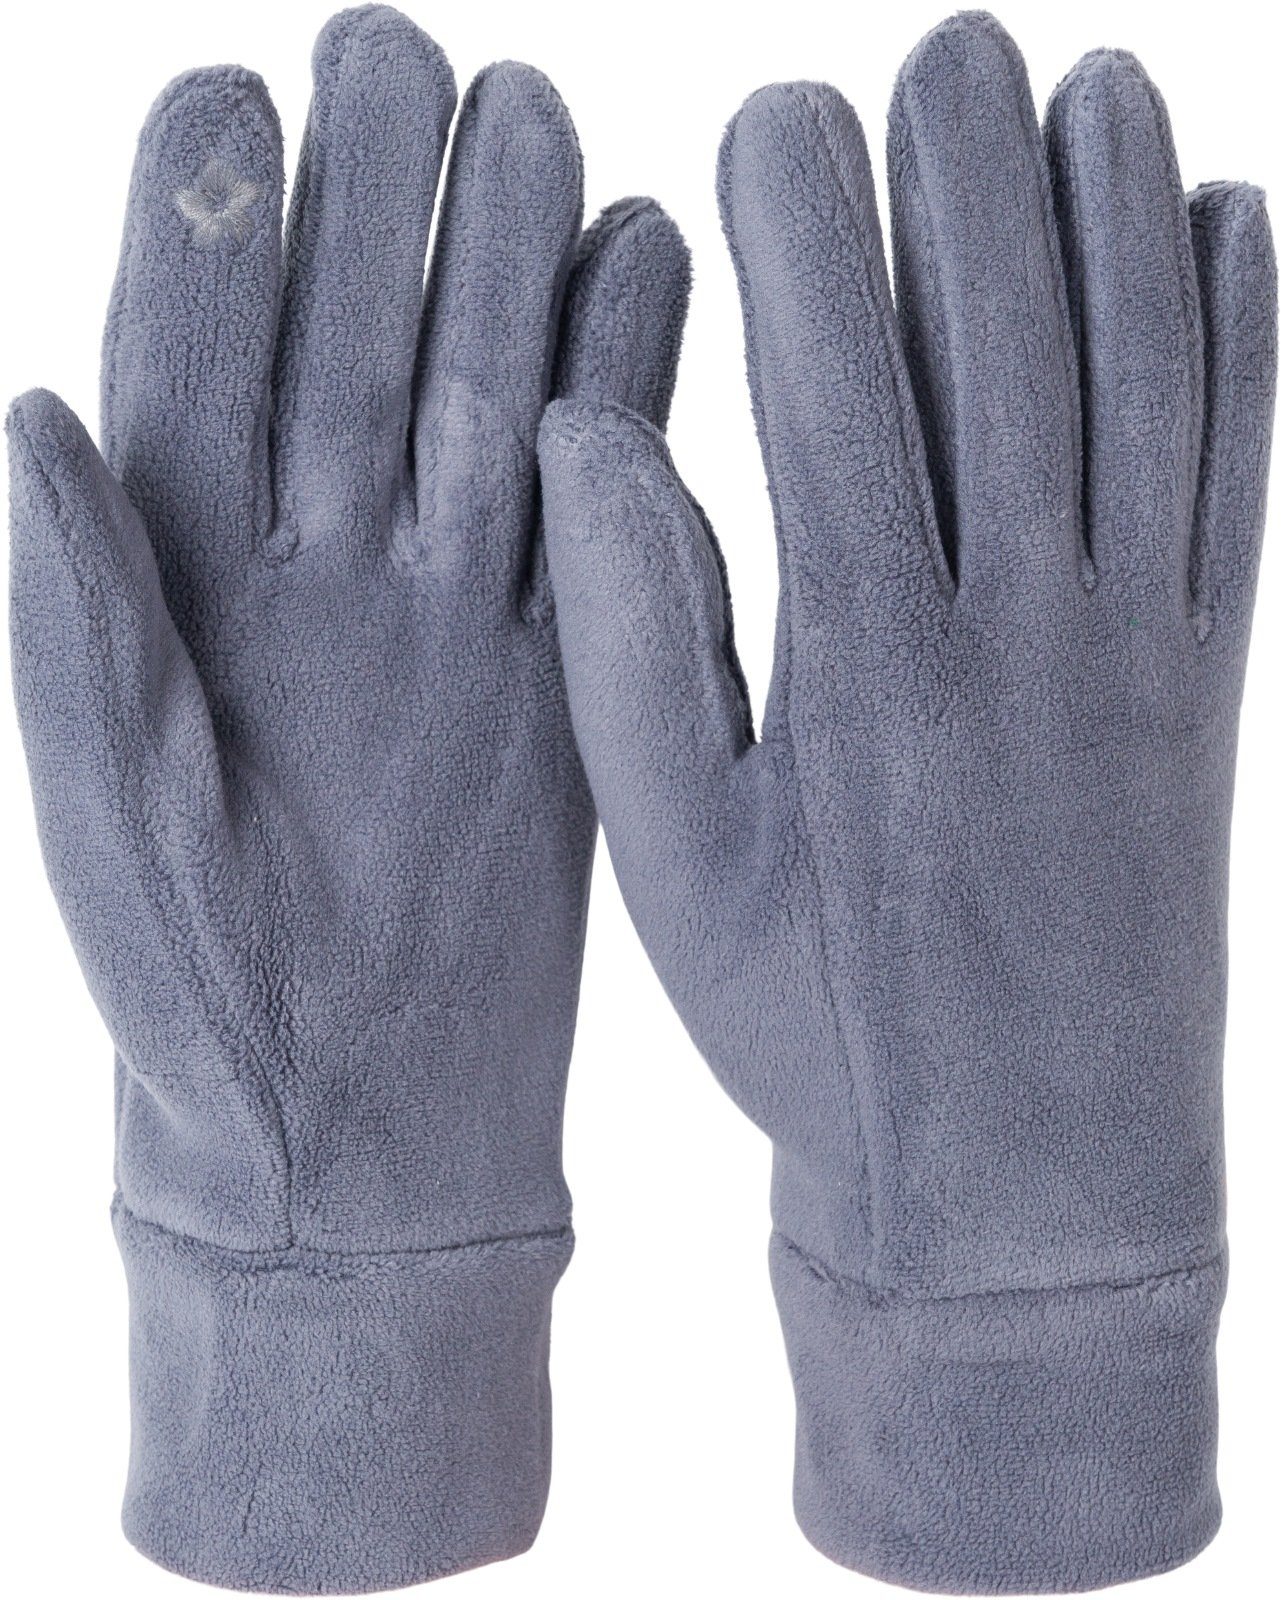 styleBREAKER Fleecehandschuhe Einfarbige Touchscreen Fleece Handschuhe Dunkelgrau | Fleecehandschuhe